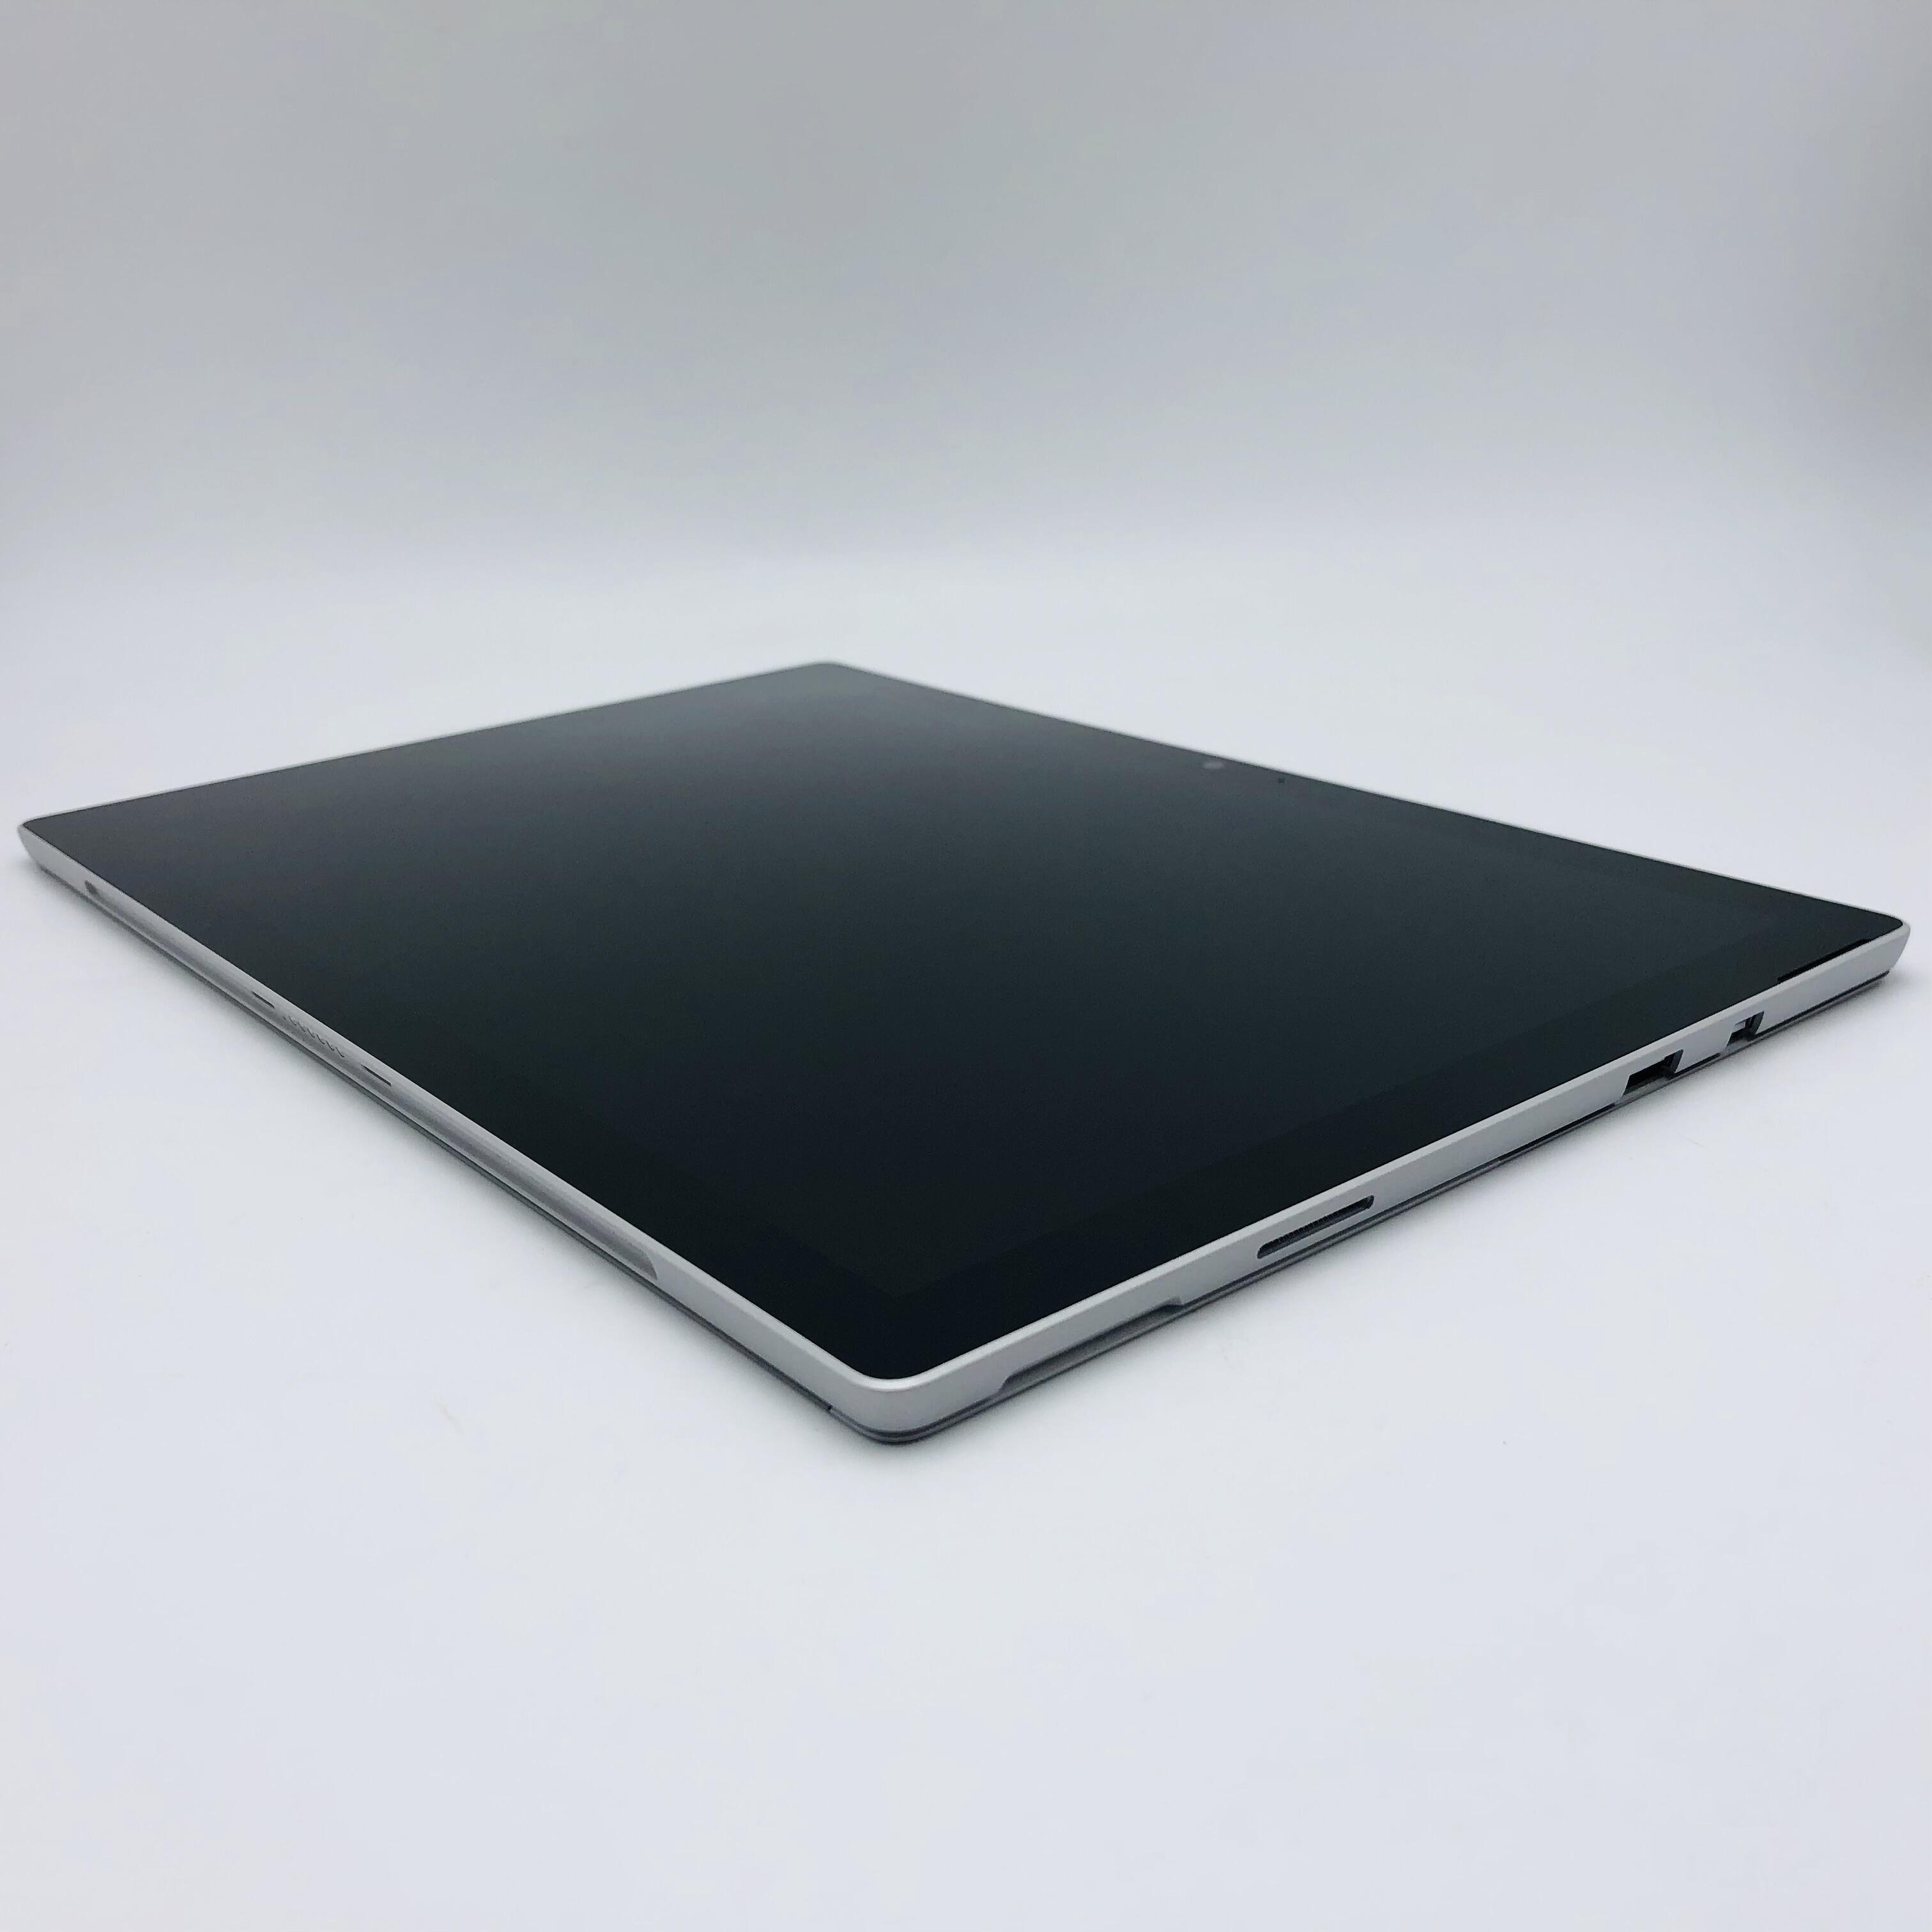 Surface Pro 6 国行 i5 8+128G